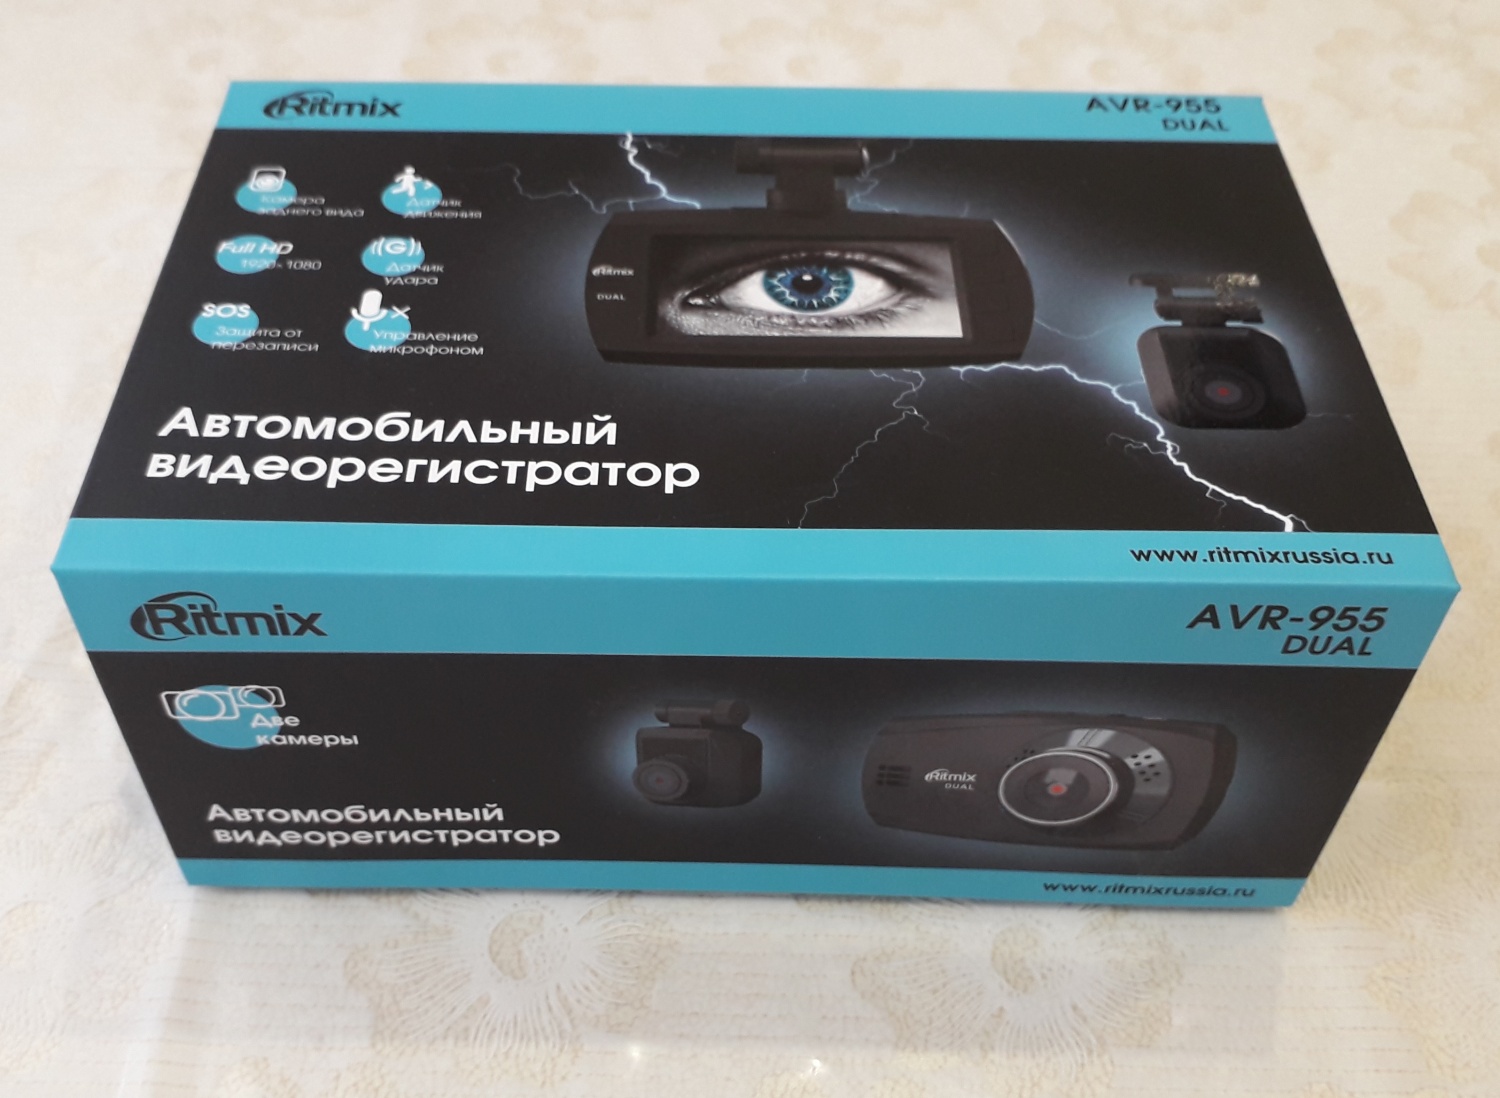 Видеорегистратор Ritmix AVR-955 Dual, 2 камеры